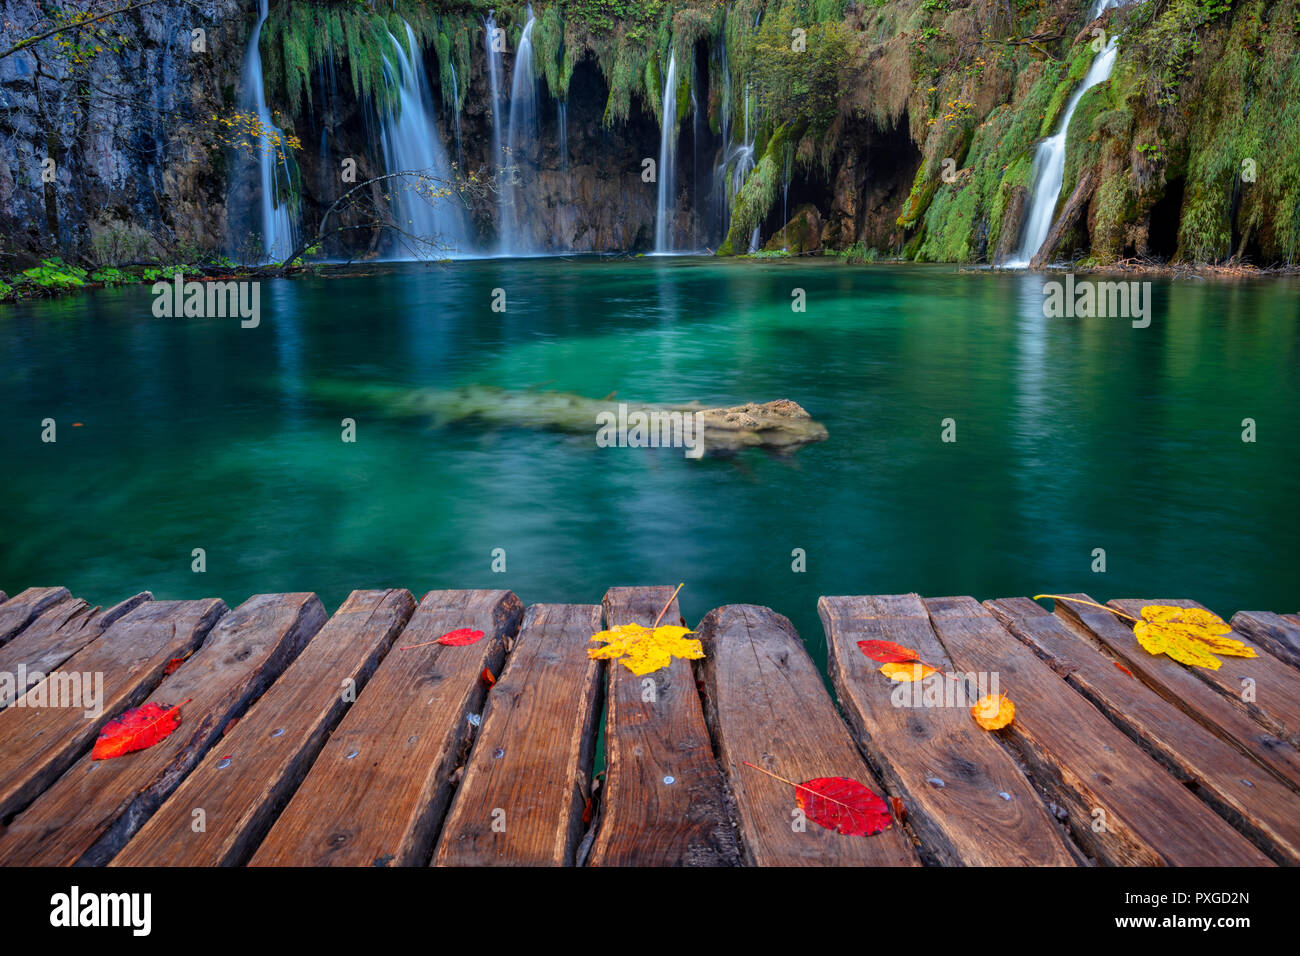 Los lagos de Plitvice. Imagen de la cascada situada en el Parque Nacional de Los Lagos de Plitvice, Croacia durante día de otoño. Foto de stock